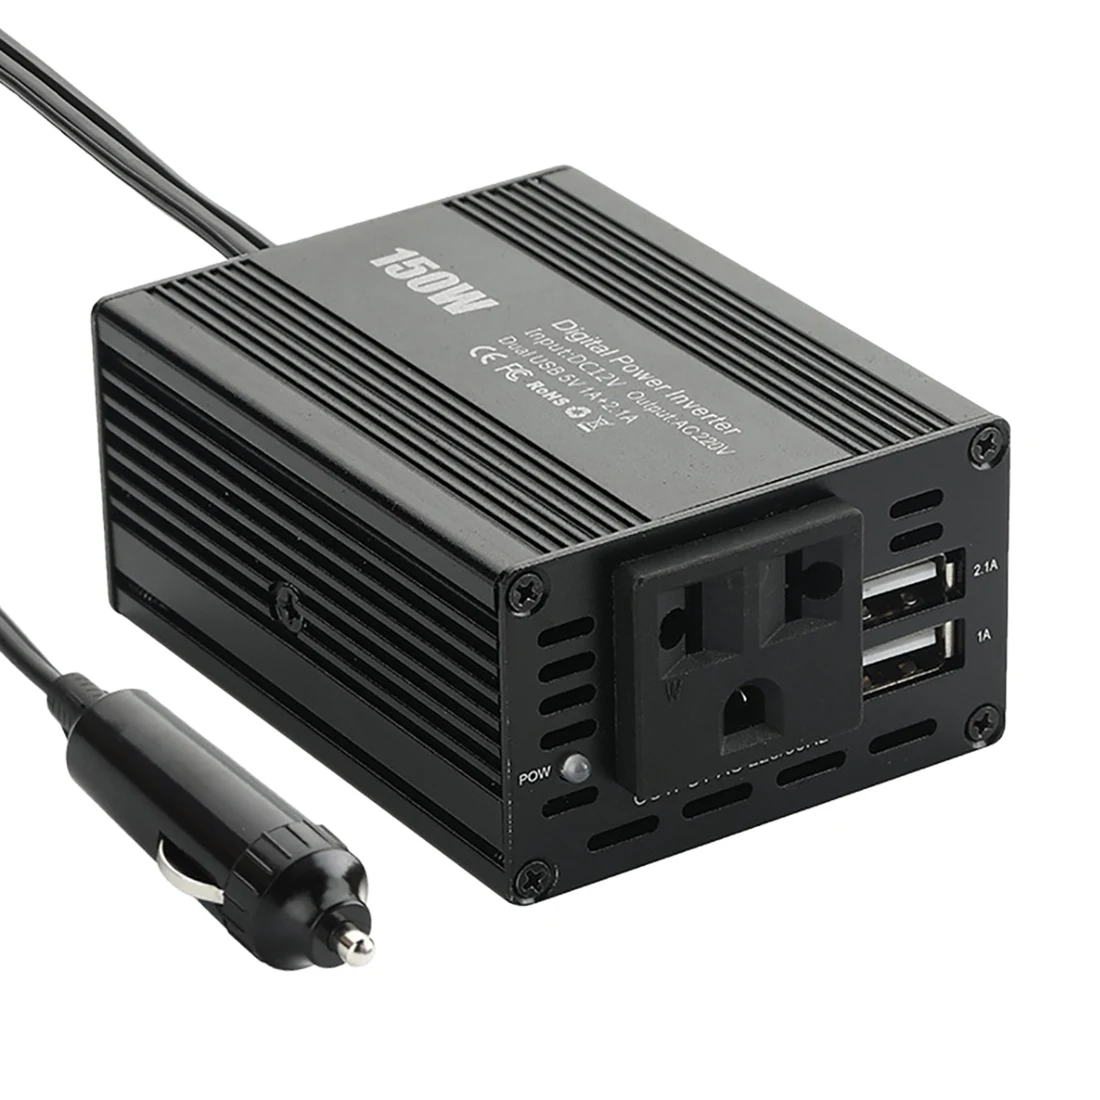 

150W Power Inverter DC12V to AC220V Power Converter Splitter Double USB Fast Charging Car Power Inverter Black EU Plug